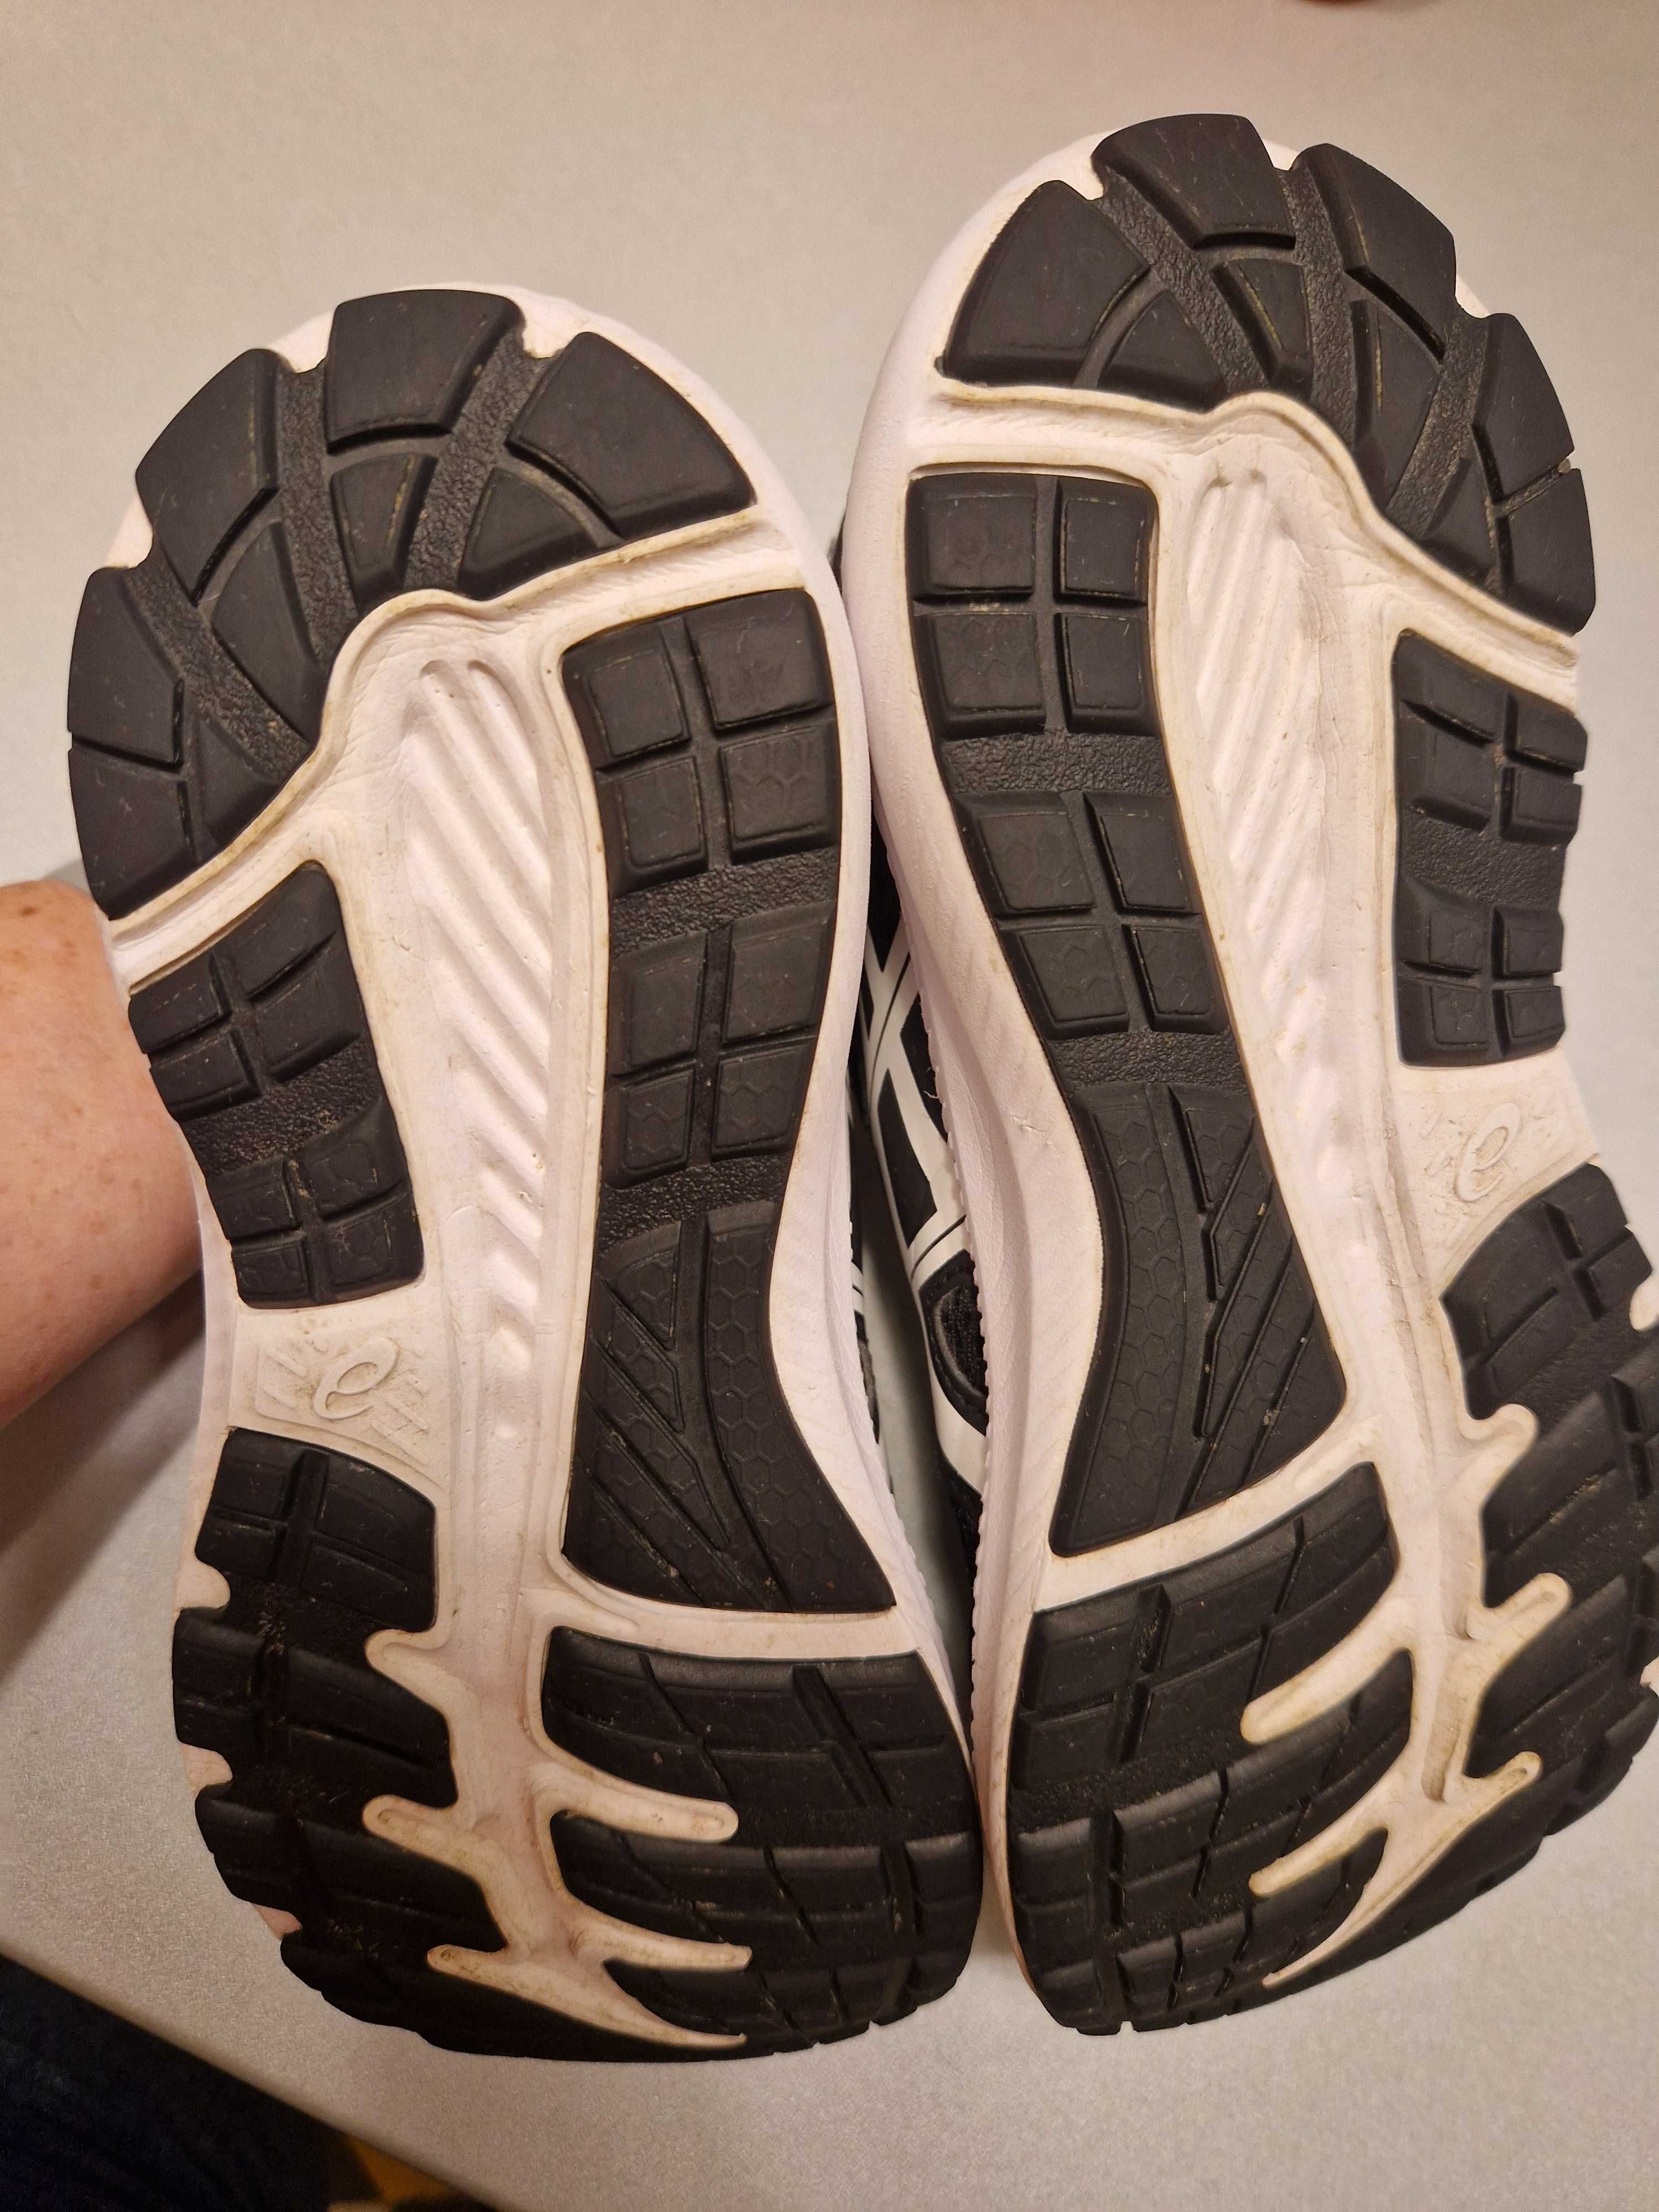 Adidasi/Pantofi sport Asics 34.5